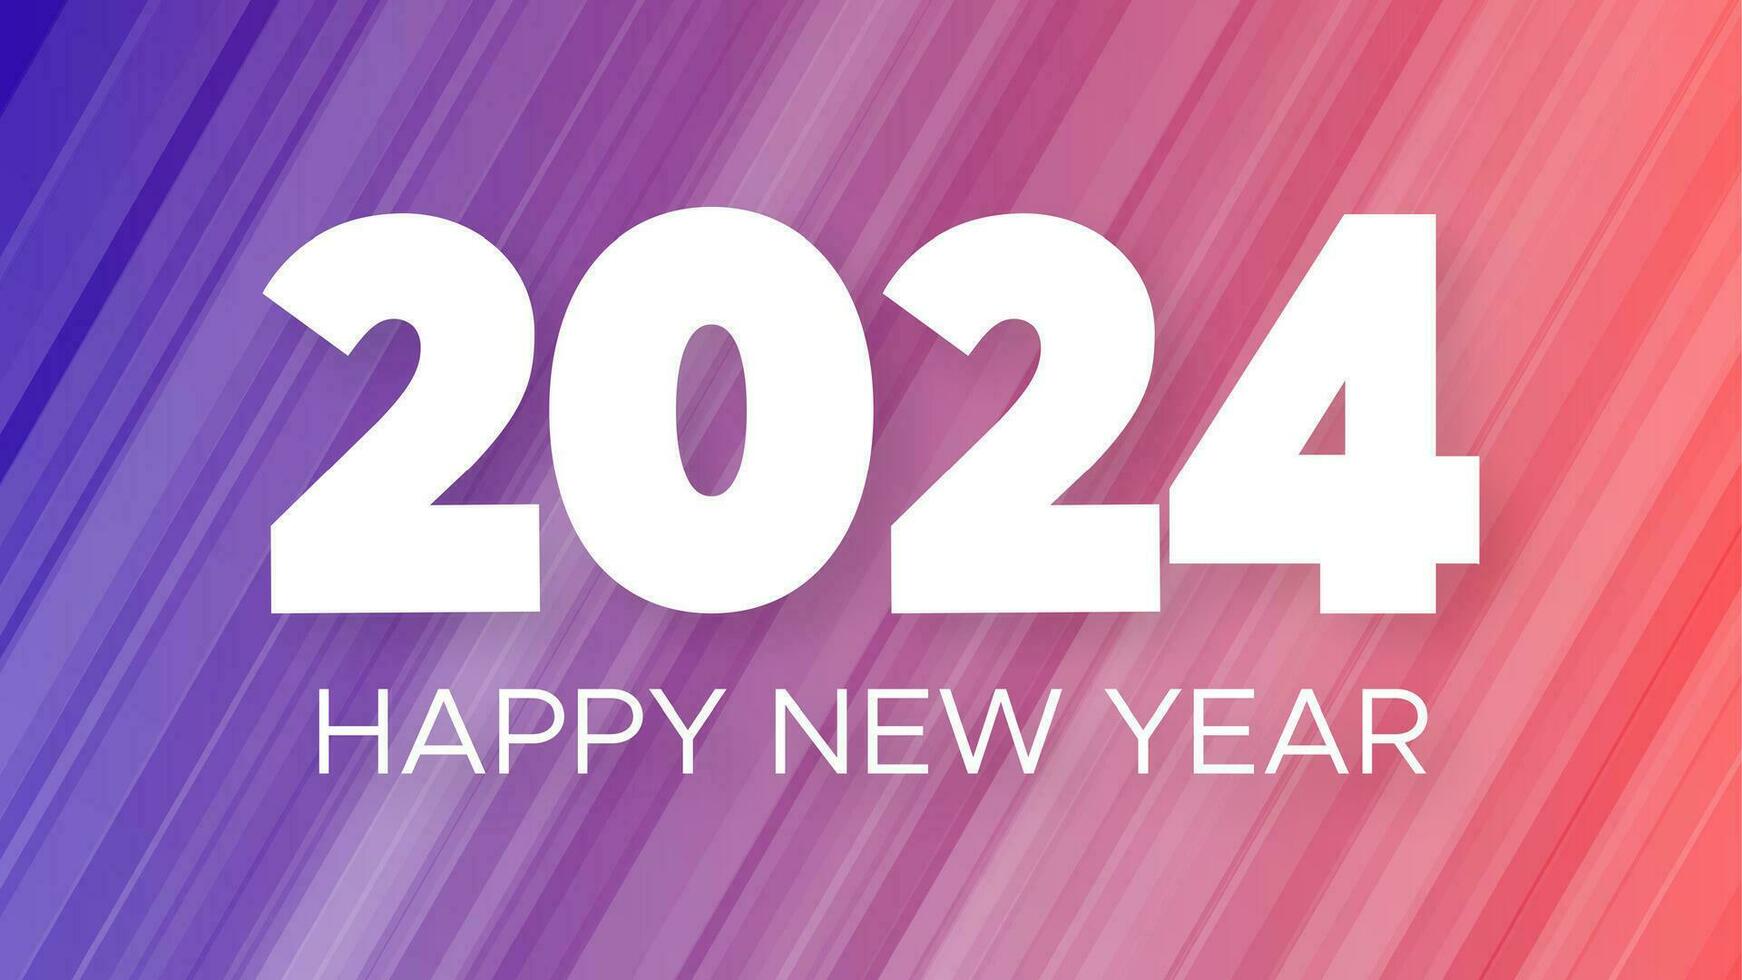 2024 feliz Novo ano fundo. moderno cumprimento bandeira modelo com branco 2024 Novo ano números em roxa abstrato fundo com linhas. vetor ilustração